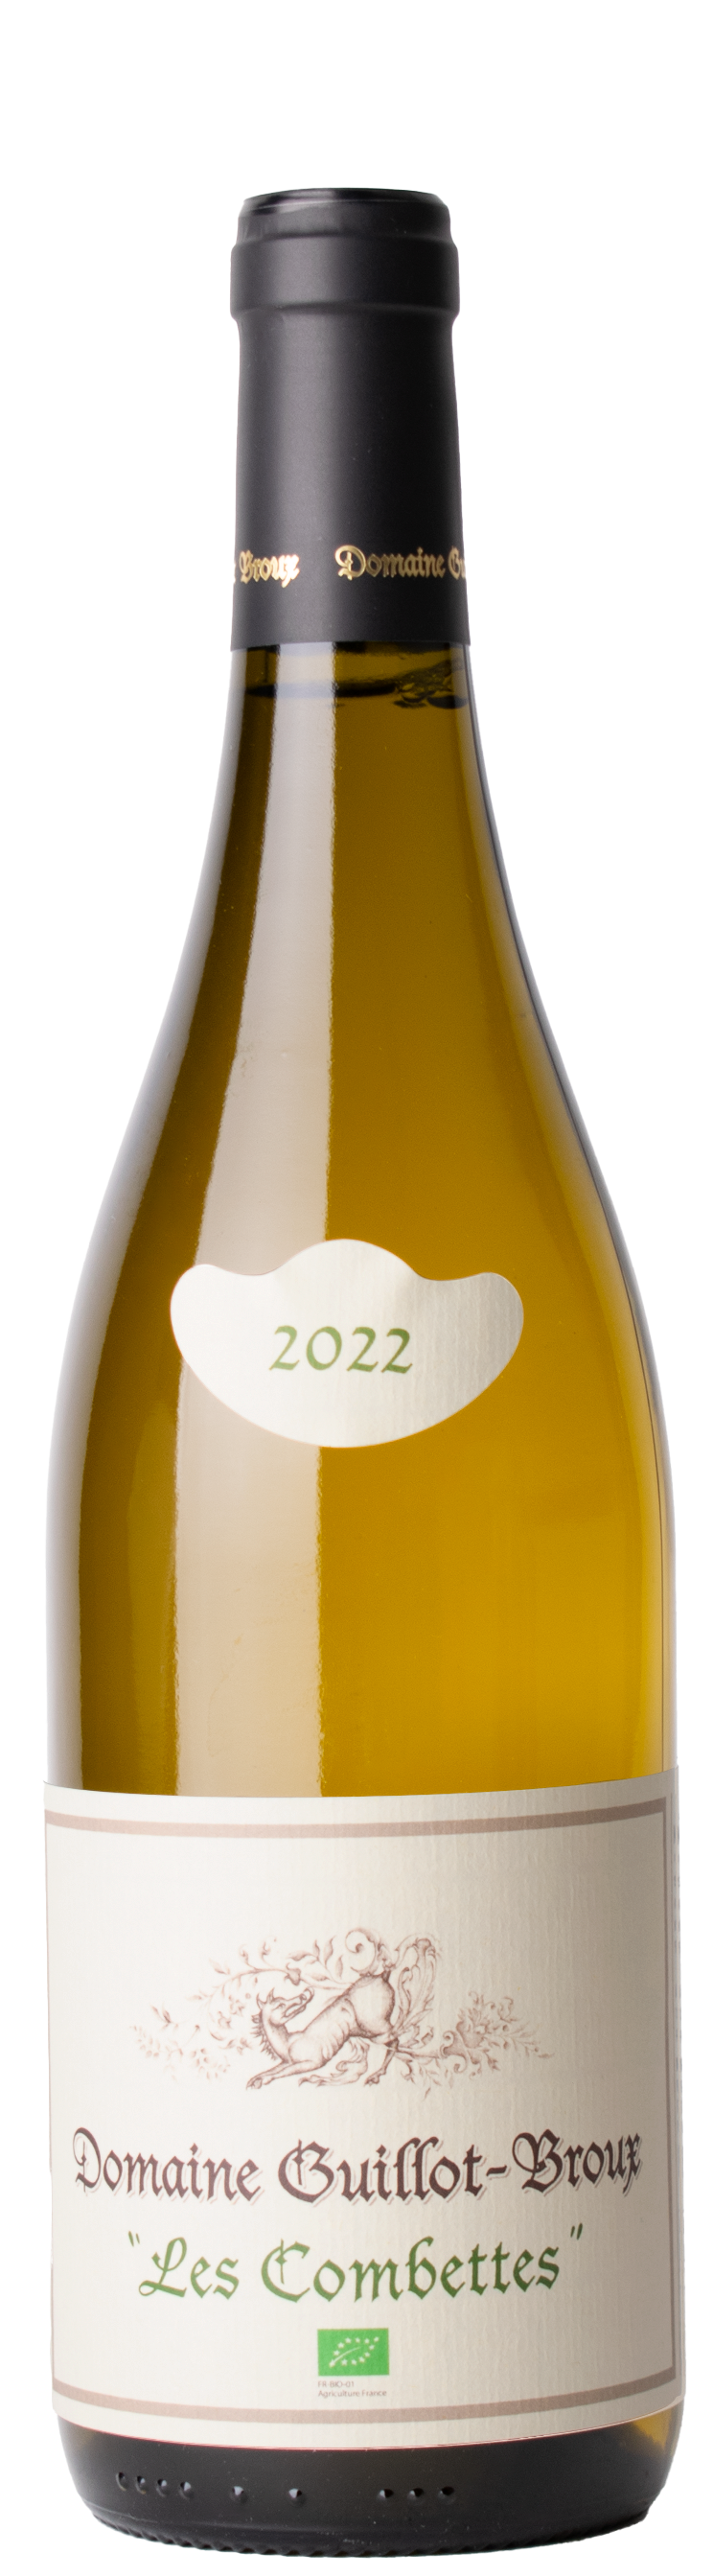 Mâcon Chardonnay Les Combettes 2022